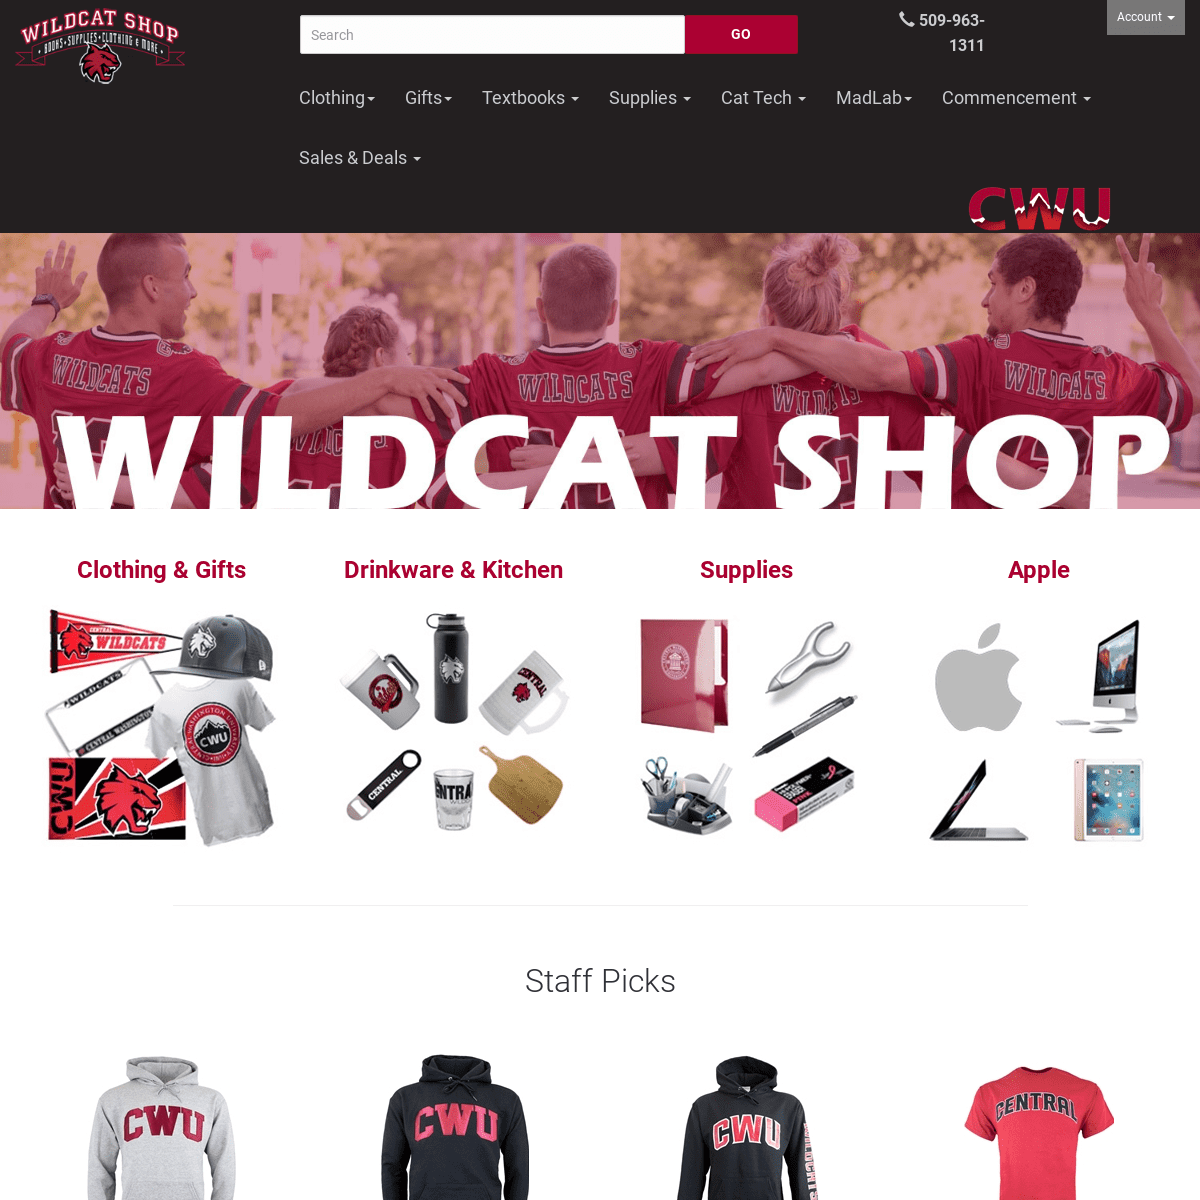 A complete backup of wildcatshop.net